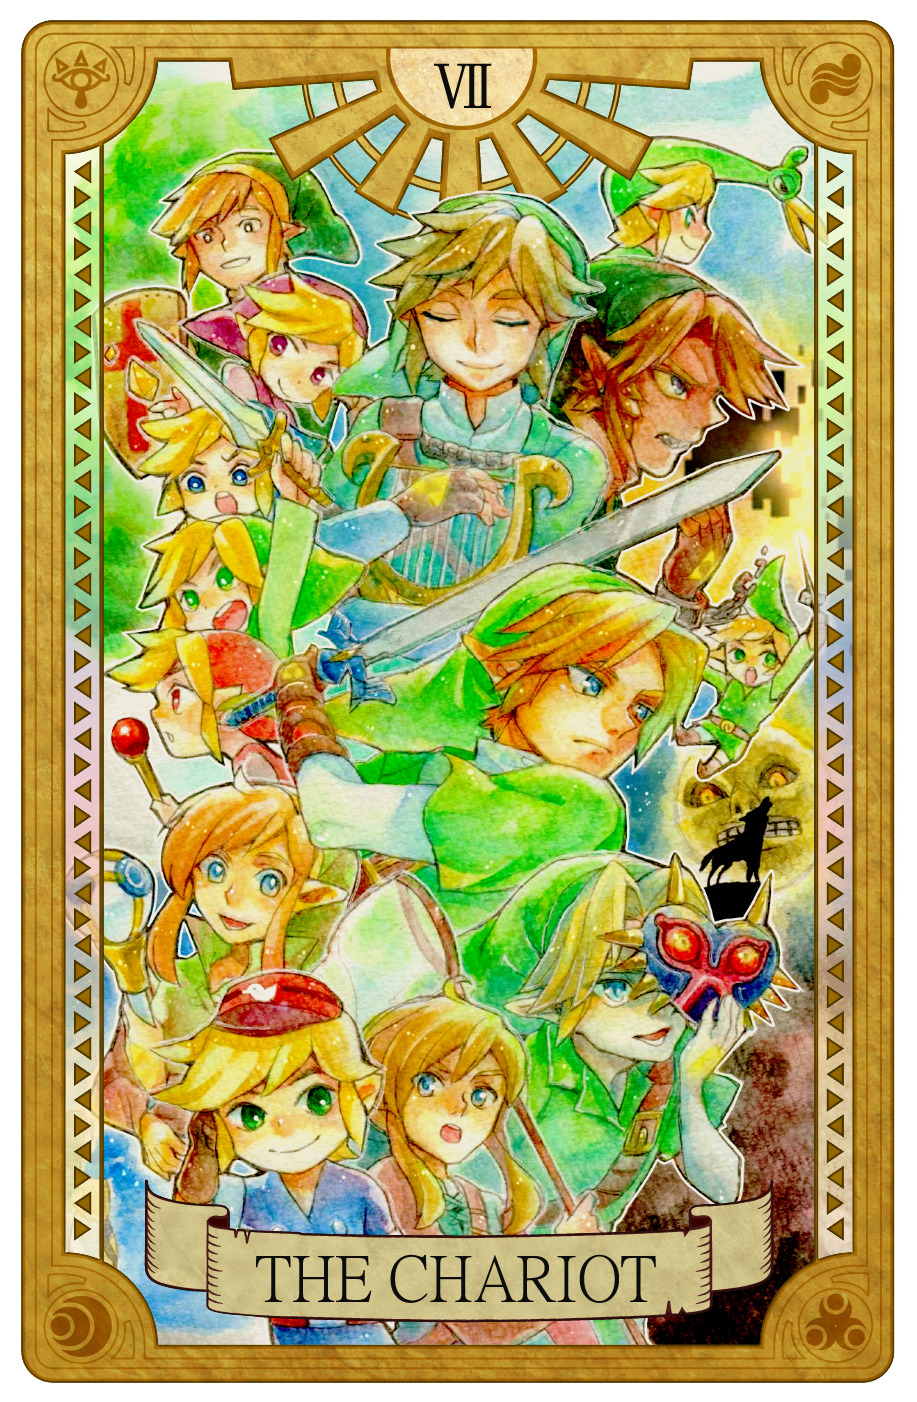                             The Legend of Zelda Tarot Cards 0 - IX